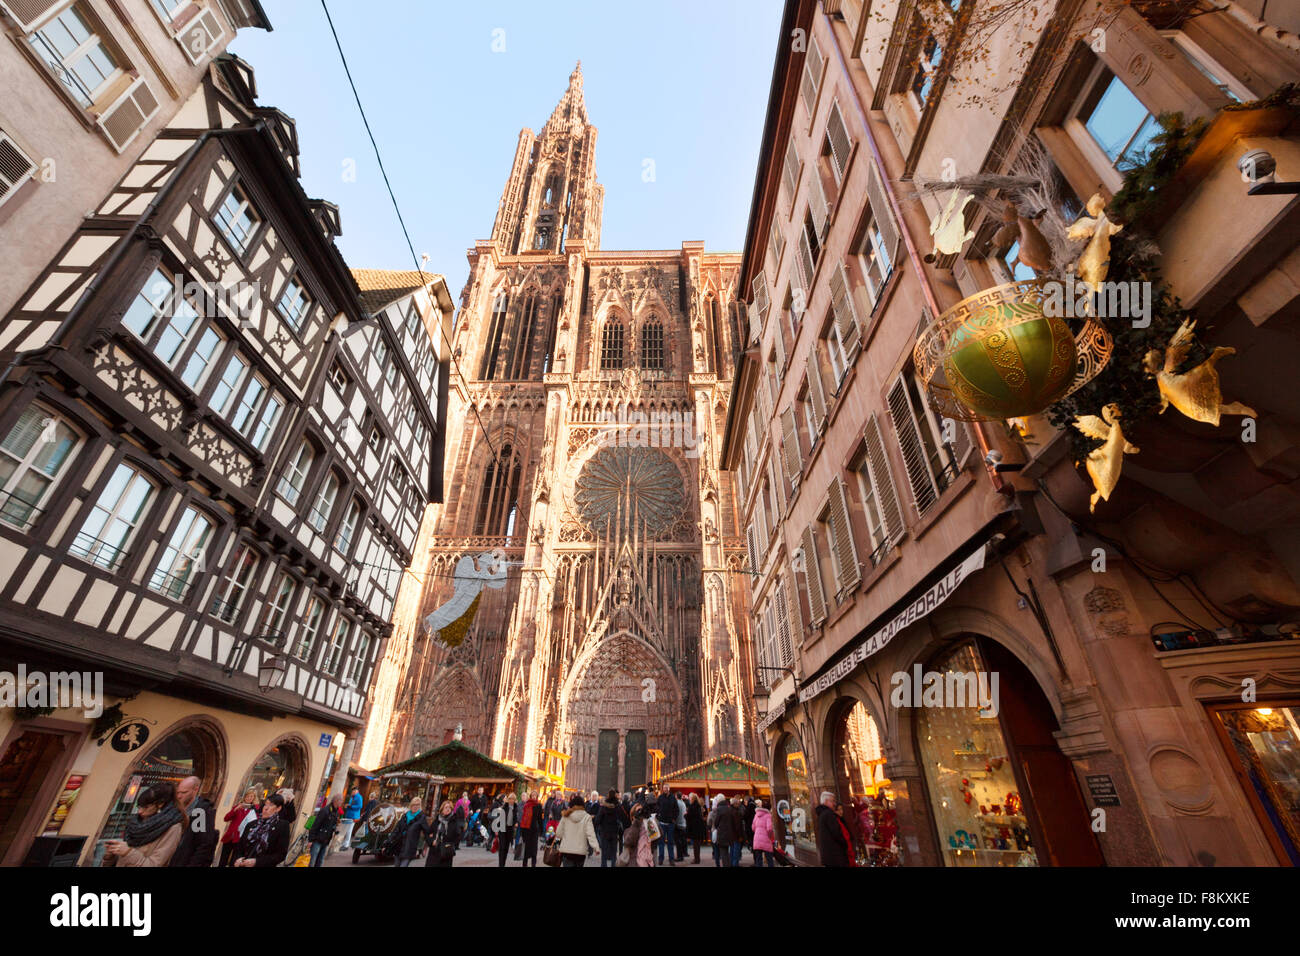 Le centre-ville de Strasbourg, la cathédrale et la vieille ville médiévale de la rue Mercière, Strasbourg, Alsace France Europe Banque D'Images